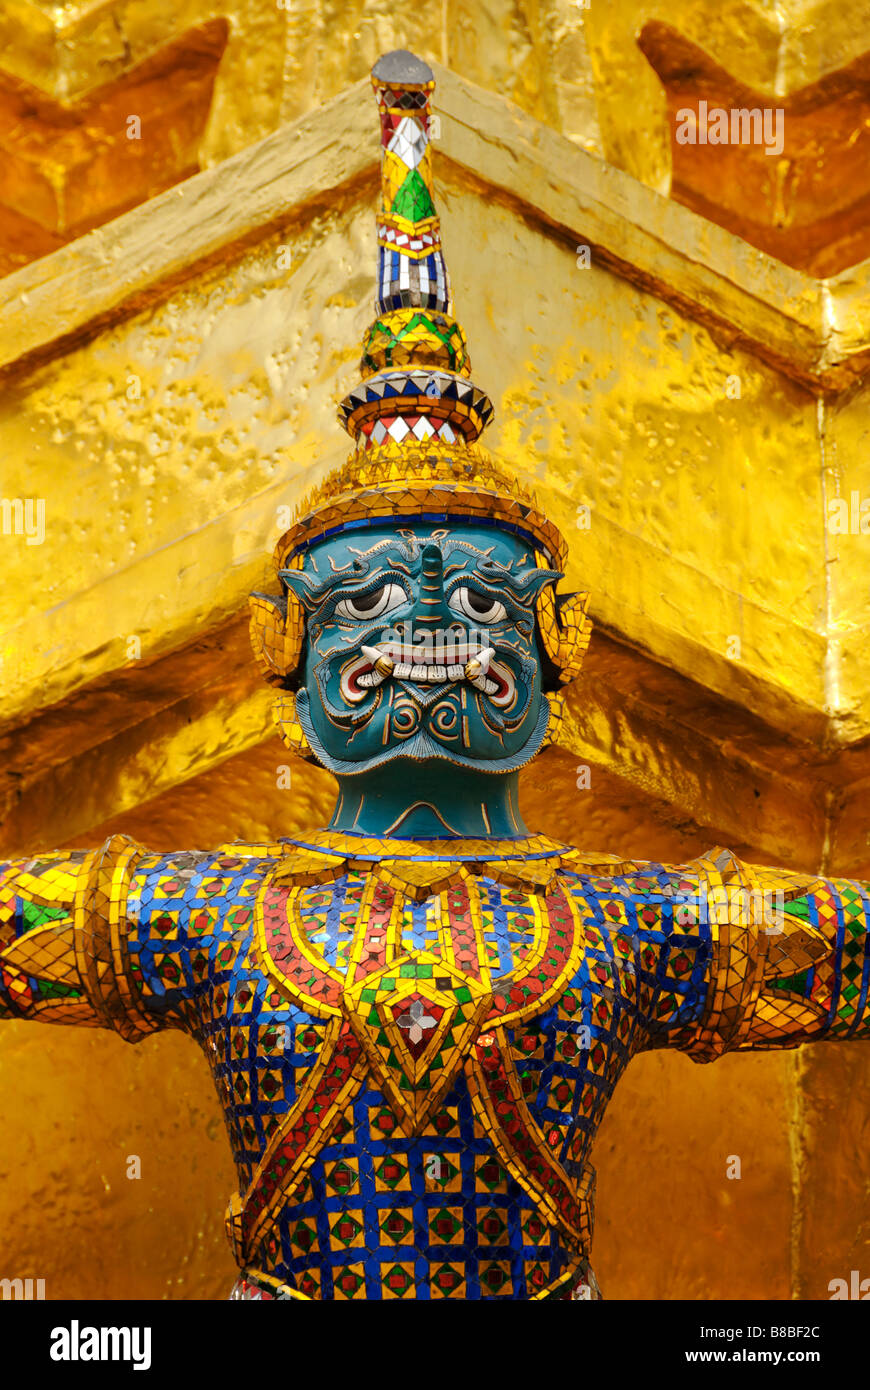 Affe-Dämon in der historischen buddhistischen Tempel Wat Phra Kaew und dem Grand Palace in Bangkok Zentralthailand Stockfoto